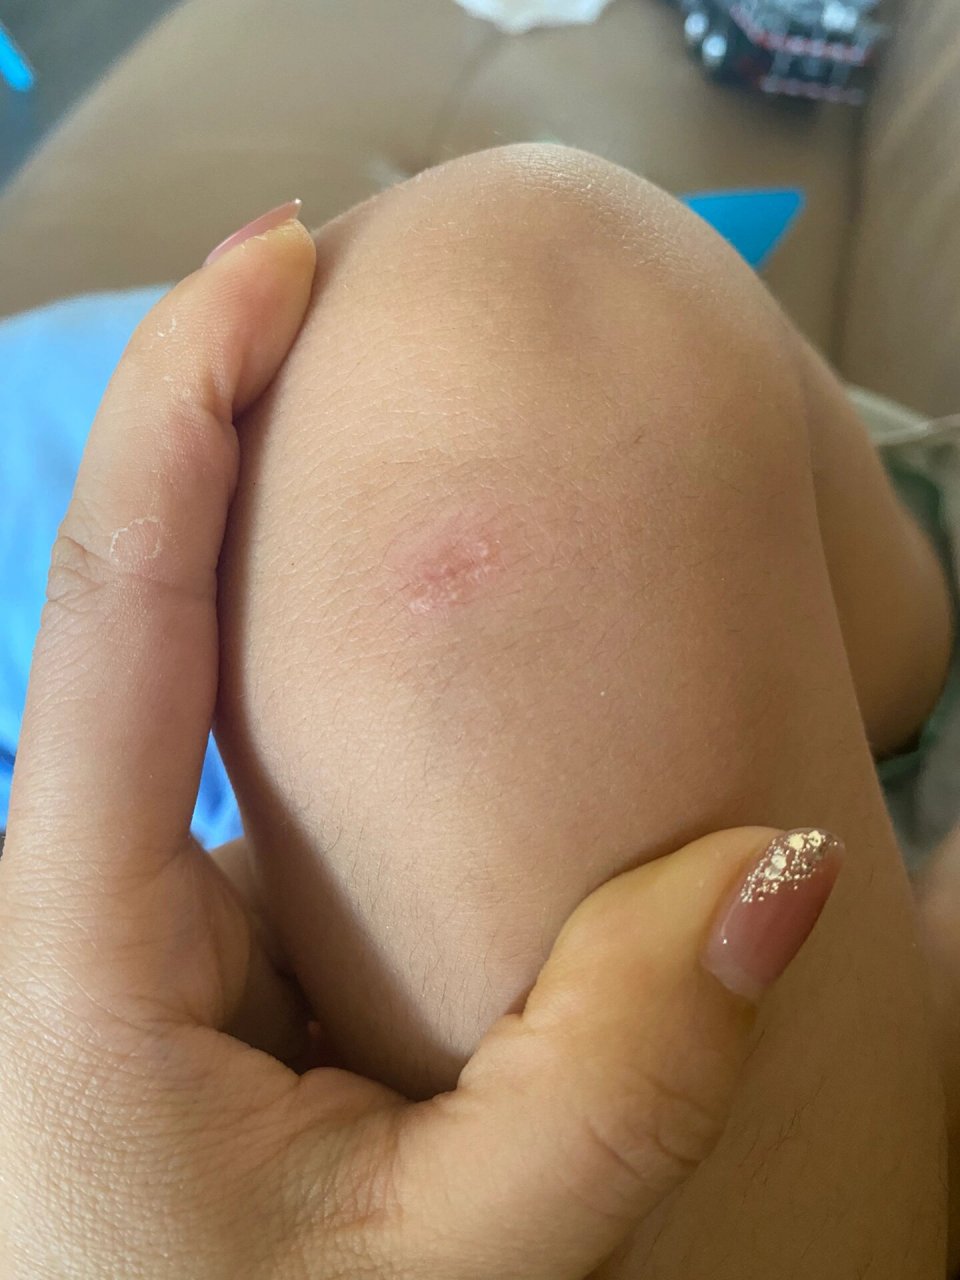 孩子膝盖磕破后伤口疤痕上长白色颗粒 孩子膝盖磕破两次,好咯以后伤口